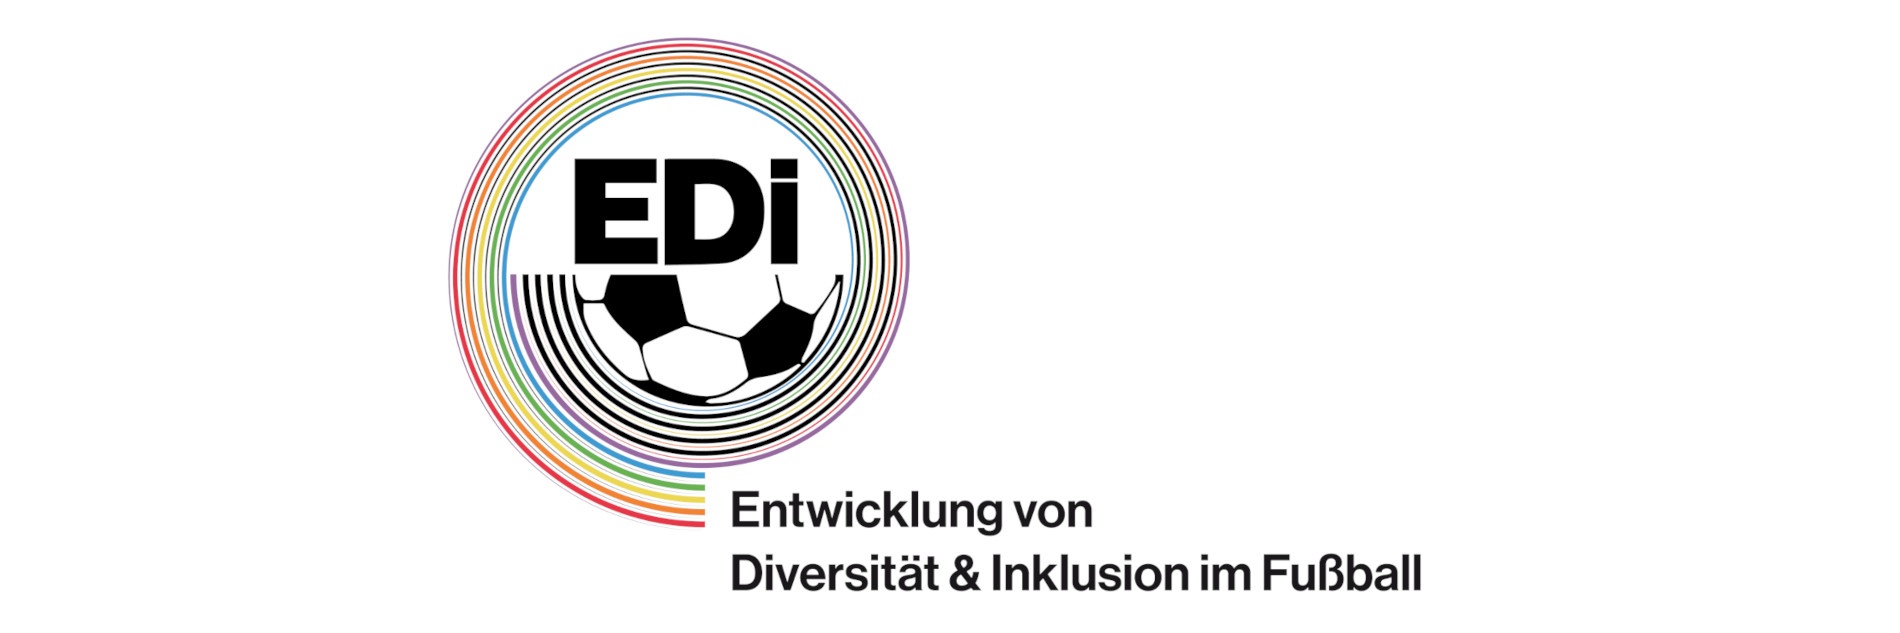 EDi Logo mit einem Halben Fußball und bunten Kreisen darum. Darunter ein "Entwicklung von Diversität & Inklusion im Fußball"-Schriftzug.